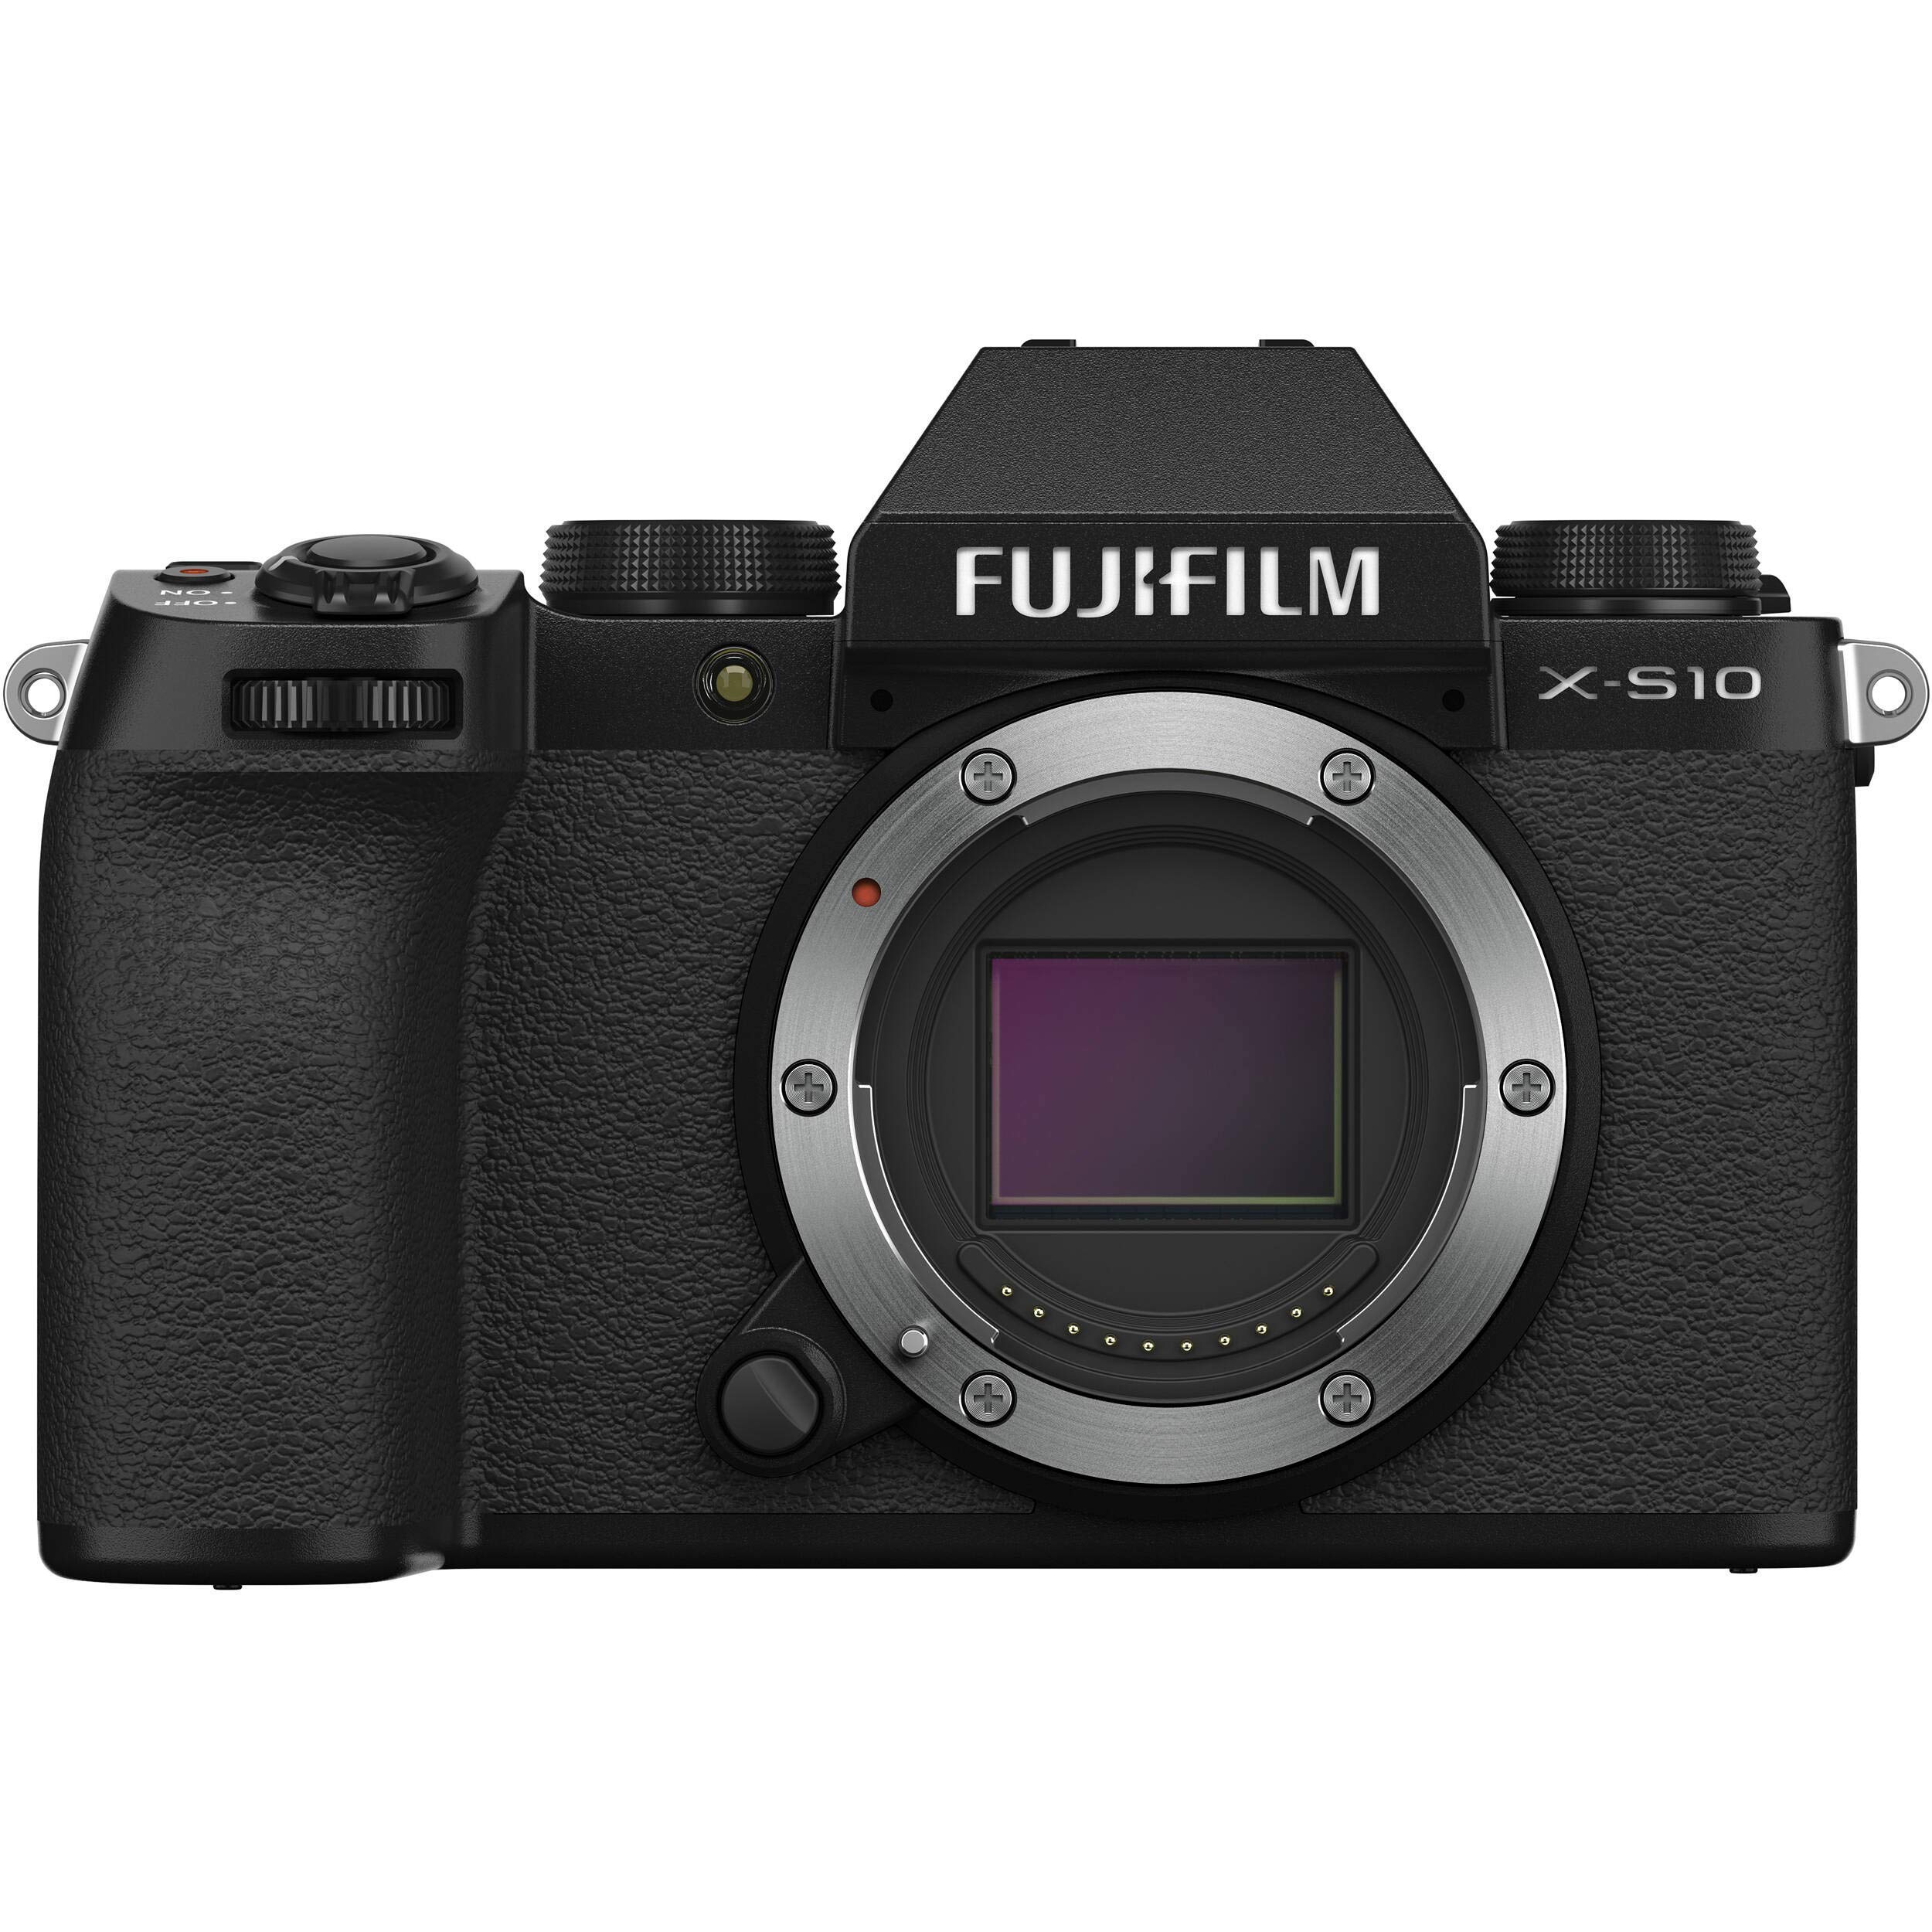 Fujifilm Aparat bezlusterkowy X-S10